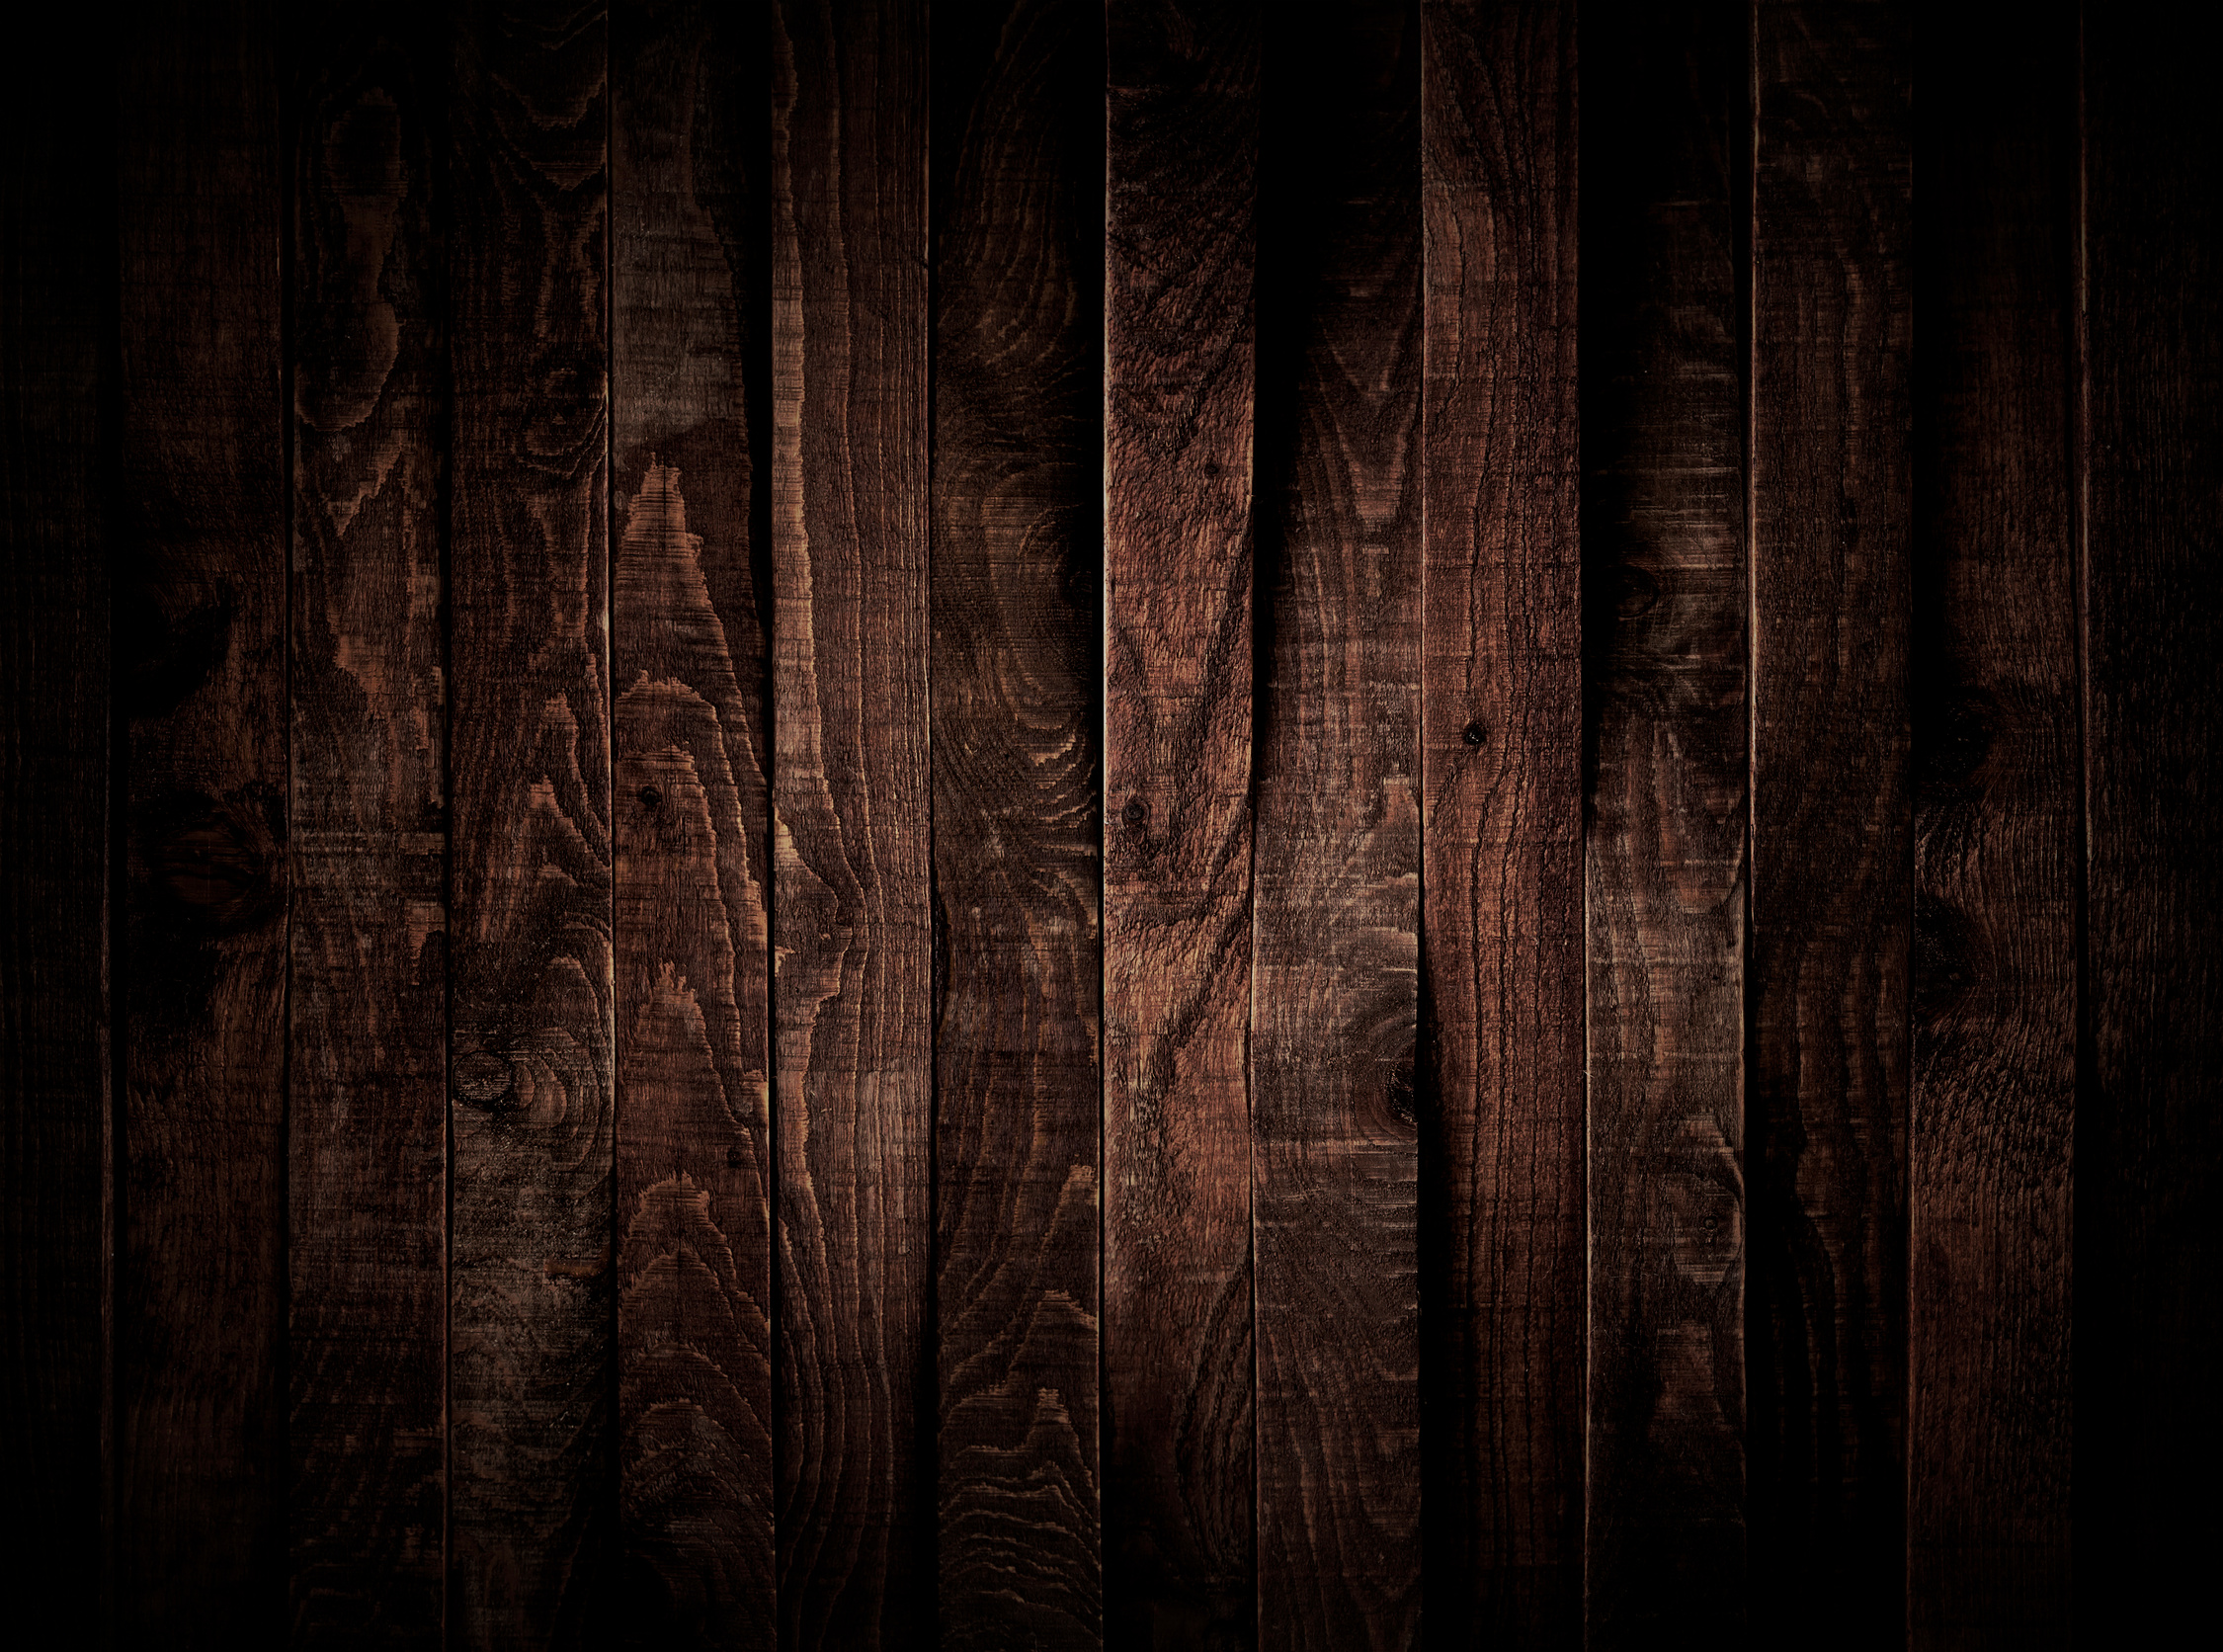 Dark wood background